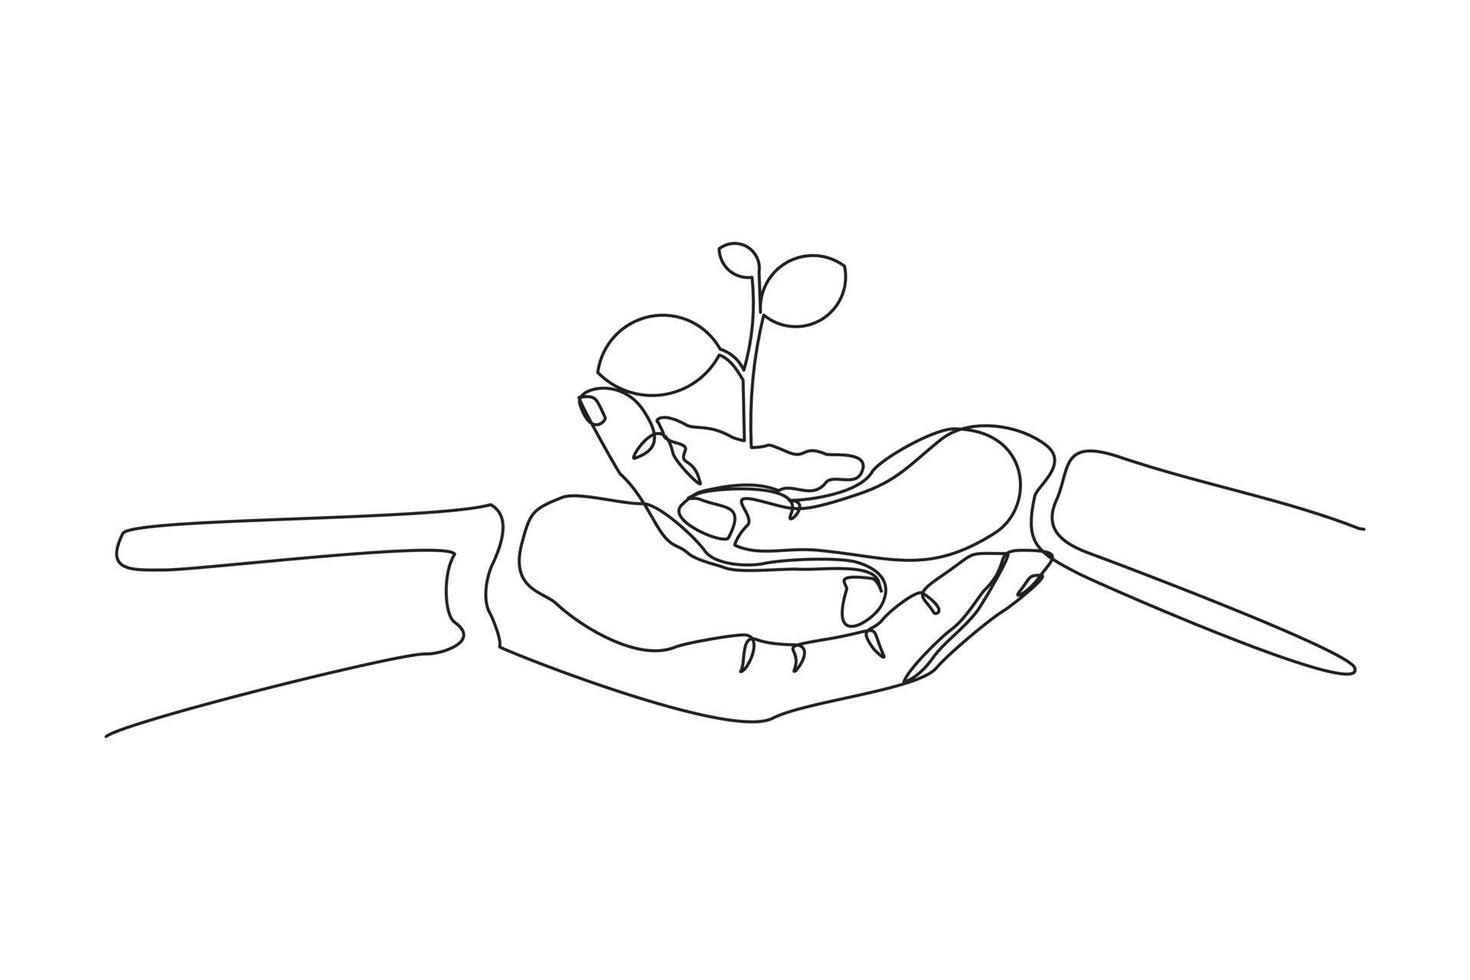 kontinuierliche eine Linie, die zwei Hände zeichnet, die eine grüne junge Pflanze zusammenhalten. einzelne einzeilige hand, die baum hält. vektorgrafikillustration des konzeptdesigns für den waldschutz vektor